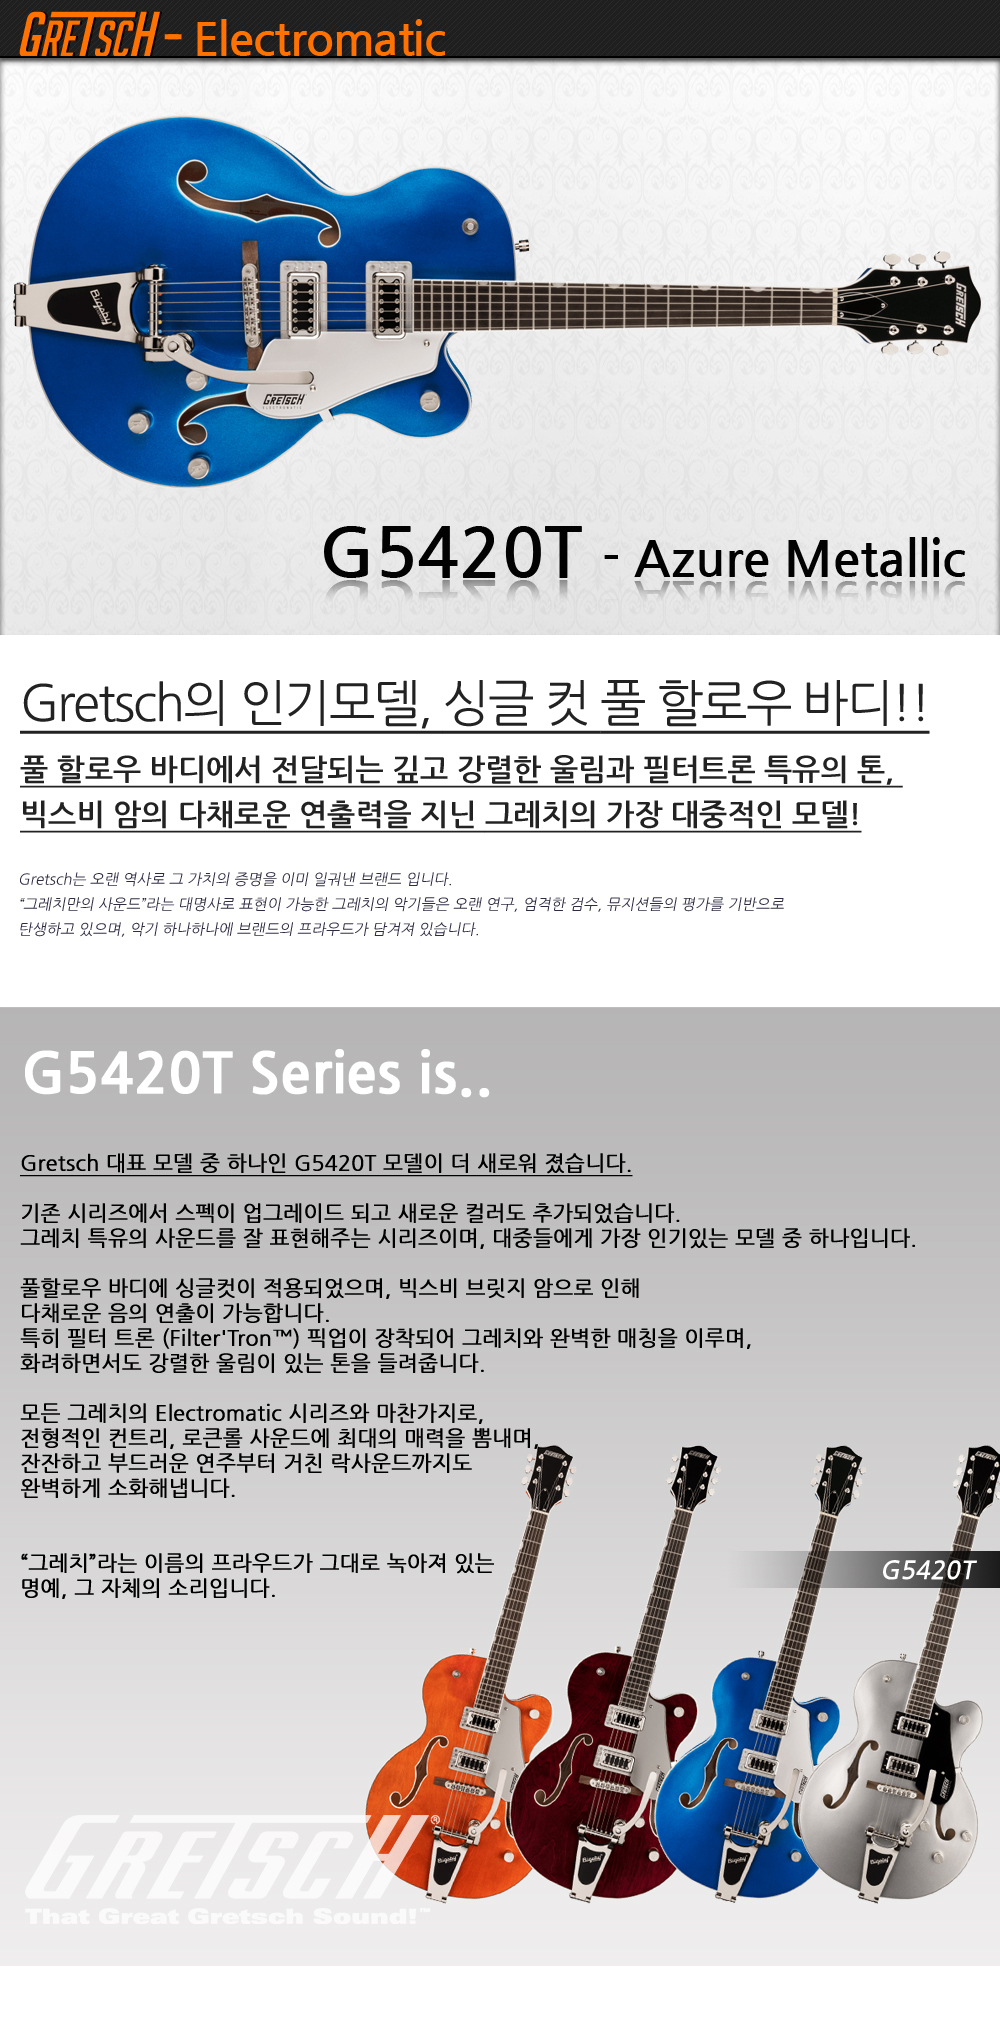 Gretsch-G5420T-EMTC-AzureMetallic-C_1_163054.jpg